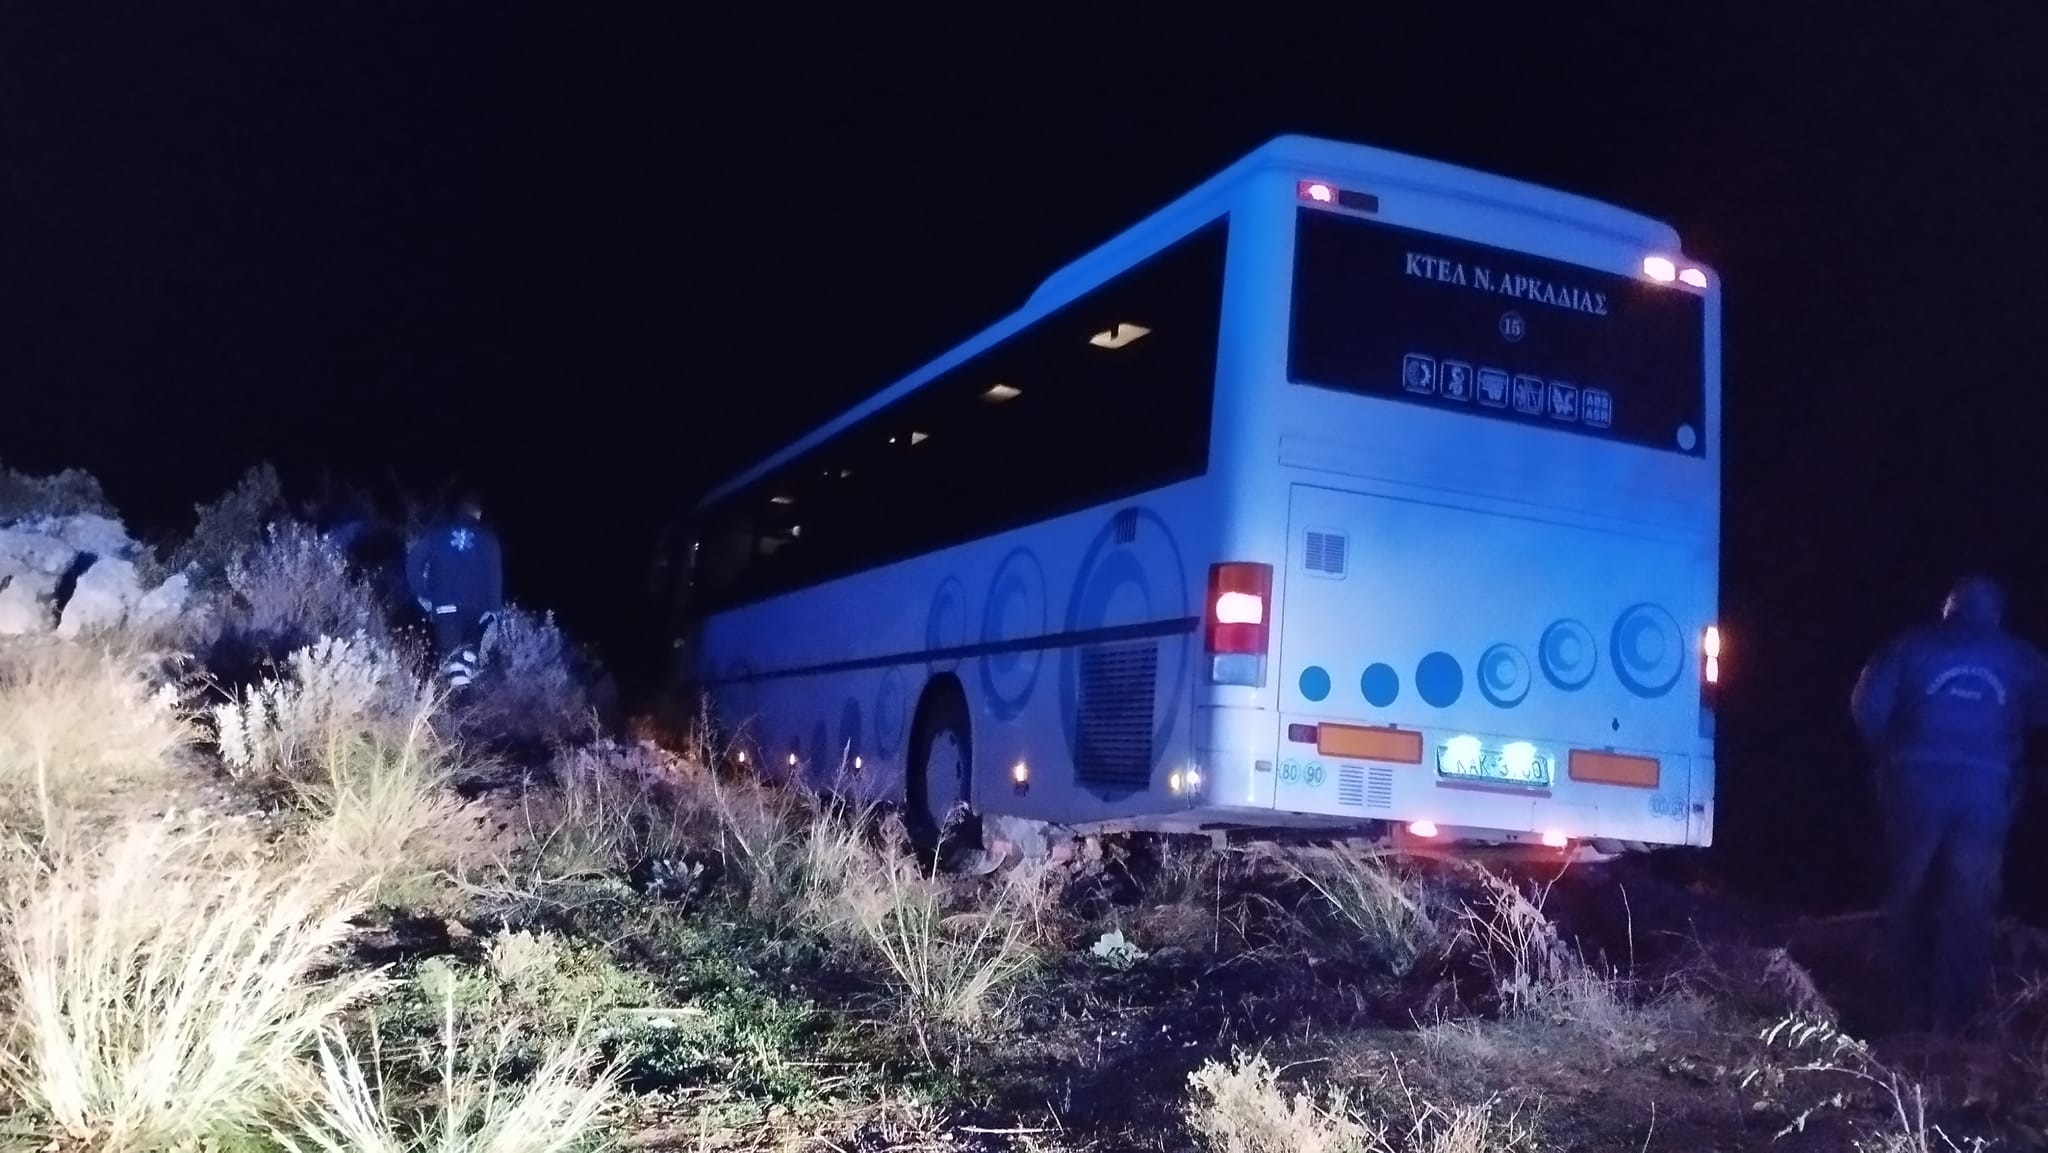 Αρκαδία: Συγκλονίζει η μοναδική επιβάτης του ΚΤΕΛ – «Έβλεπα το λεωφορείο να φτάνει στον γκρεμό»